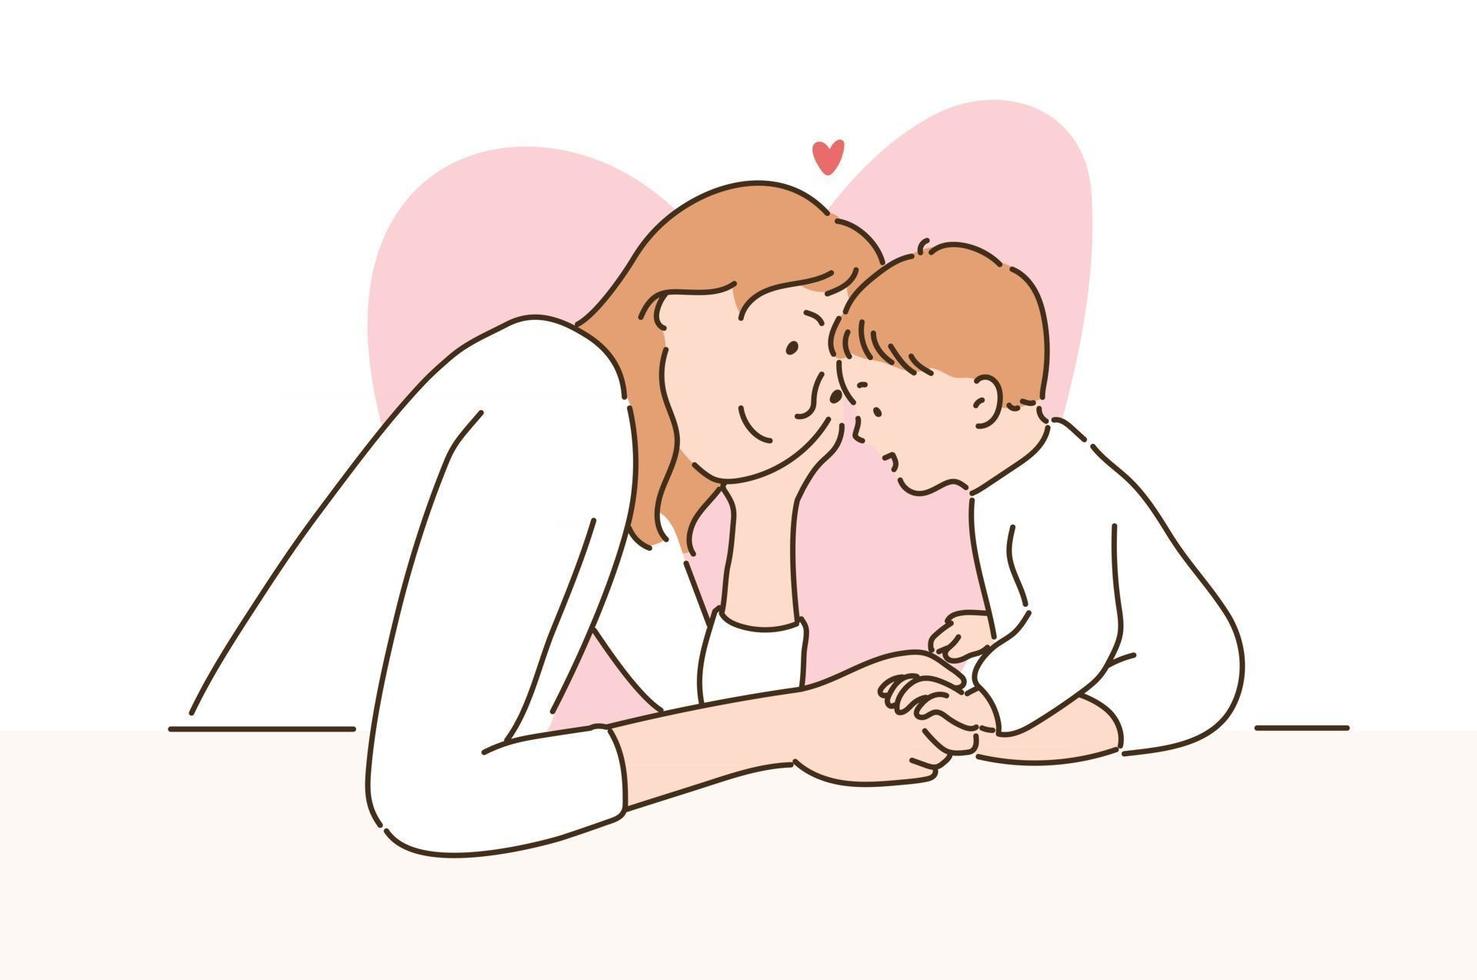 una madre guarda amorevolmente il suo bambino. illustrazioni di disegno vettoriale stile disegnato a mano.